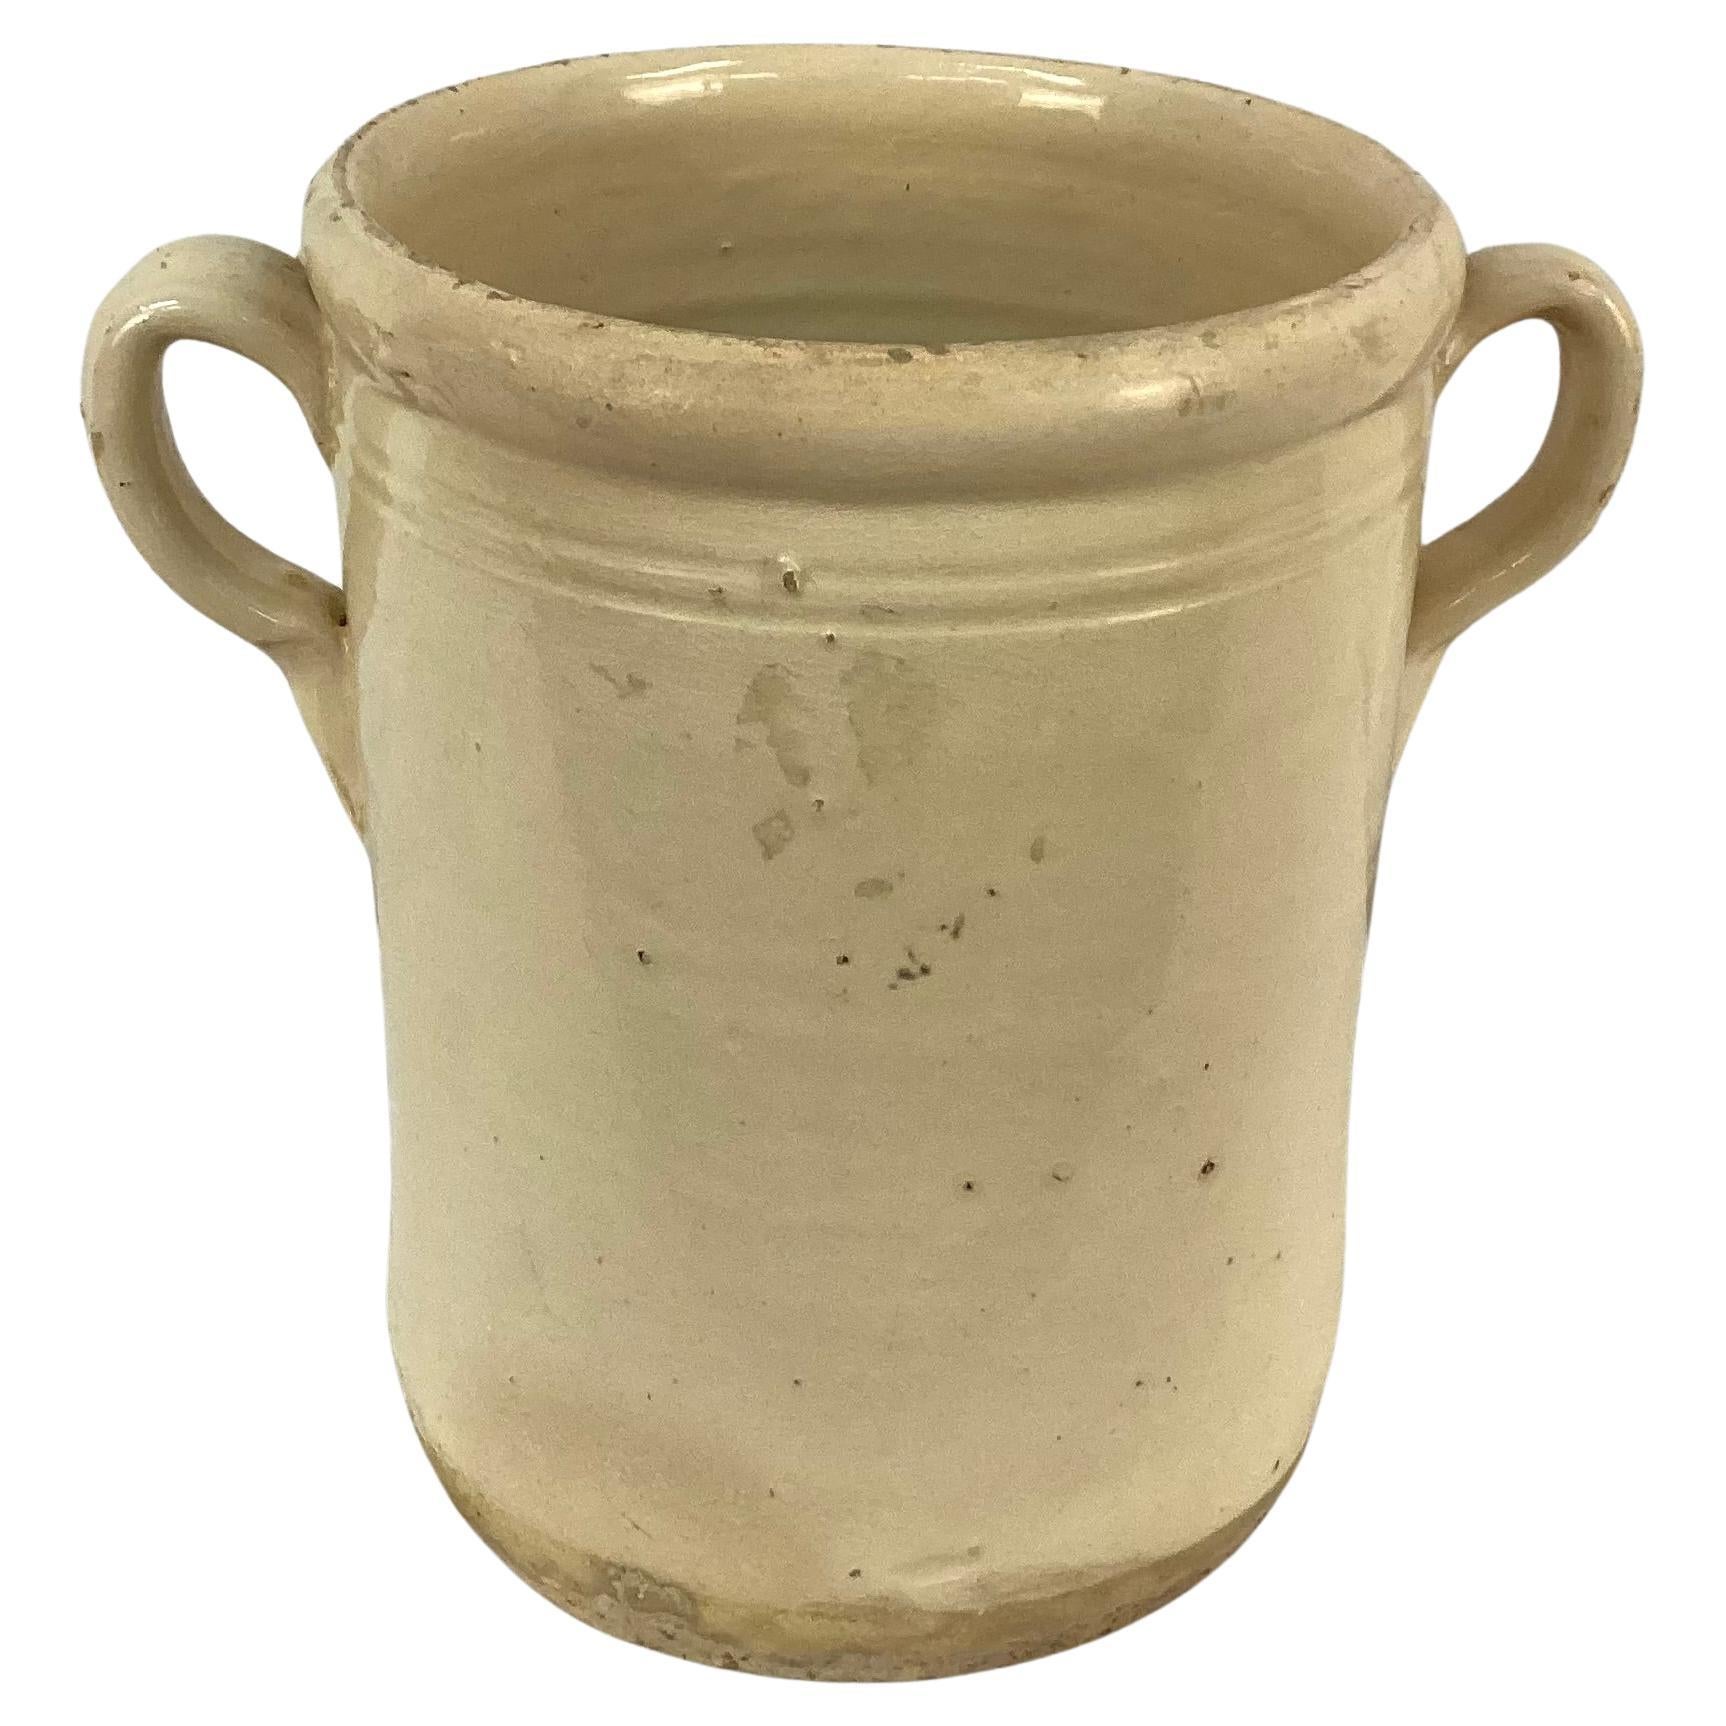 Pot de conservation pour chiminea en céramique italienne du 19e siècle avec poignées. Ces pots servaient à conserver les aliments tels que les fruits, la viande ou les légumes. Ils ont été conçus pour être utilisés en conjonction avec un poêle à